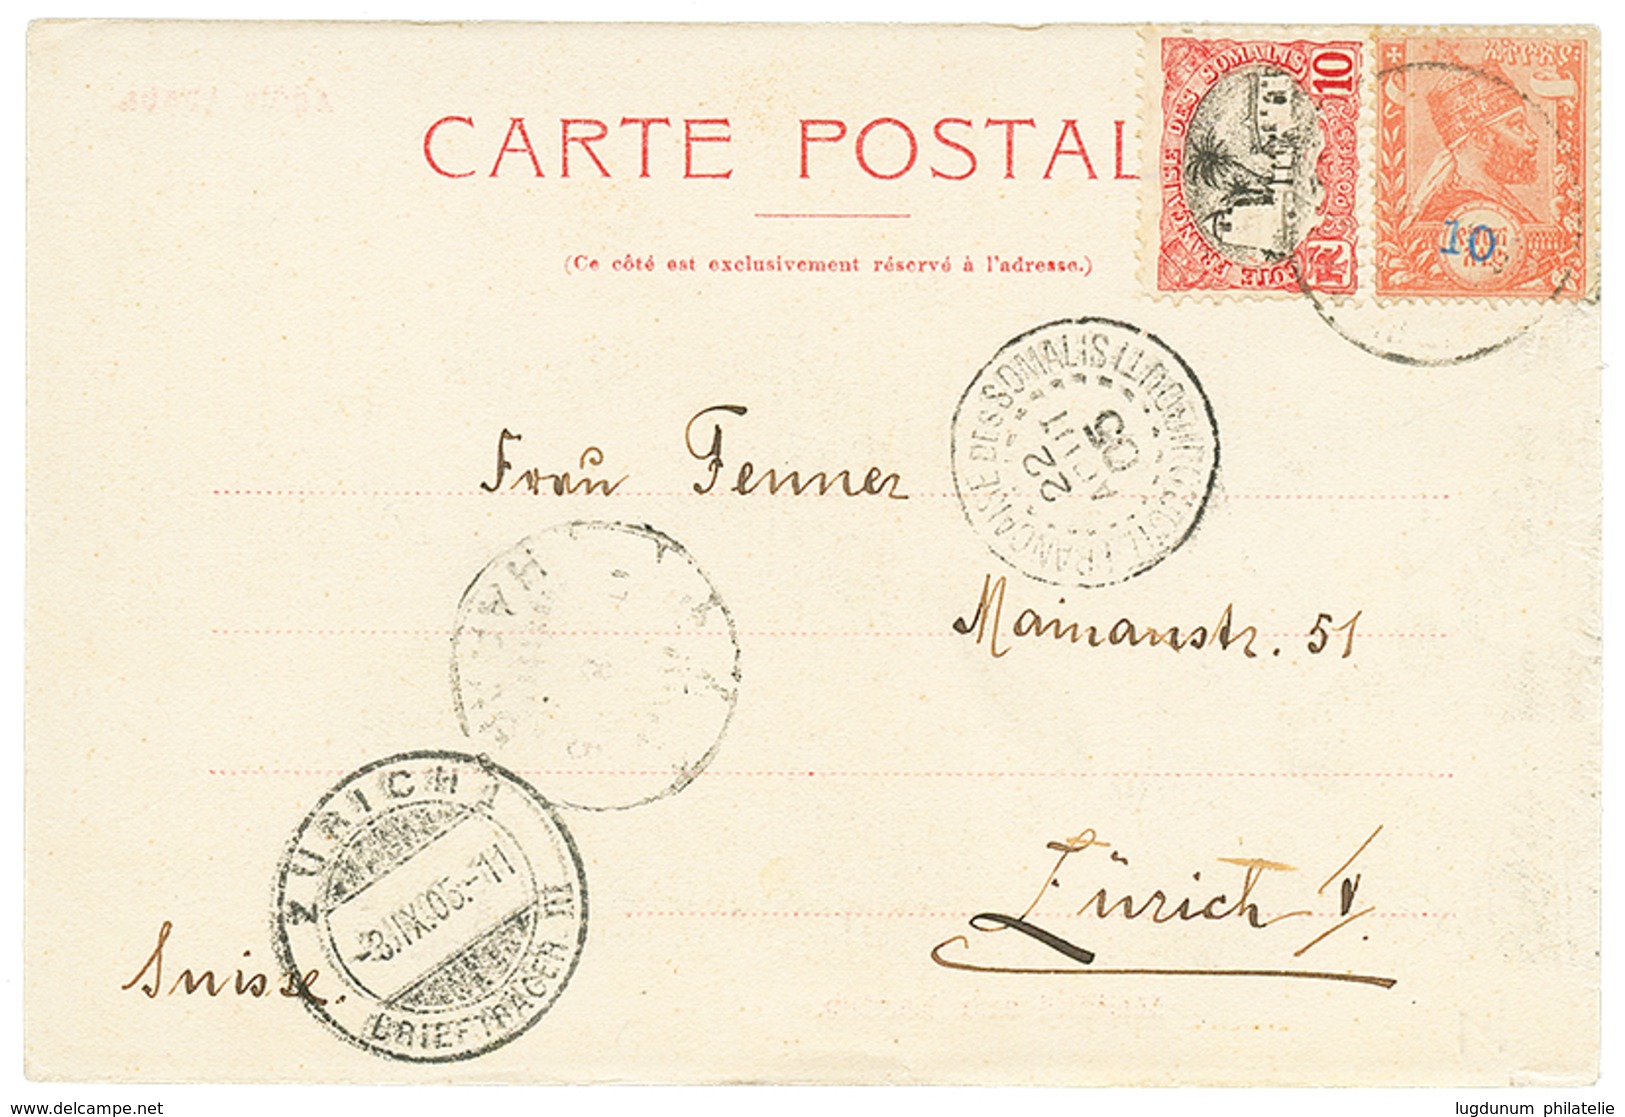 1384 1905 ETHIOPIA 10 On 1/2g + SOMALI COAST 10c Canc. HARRAR On Card Via DJIBOUTI To SWITZERLAND. Vf. - Ethiopie